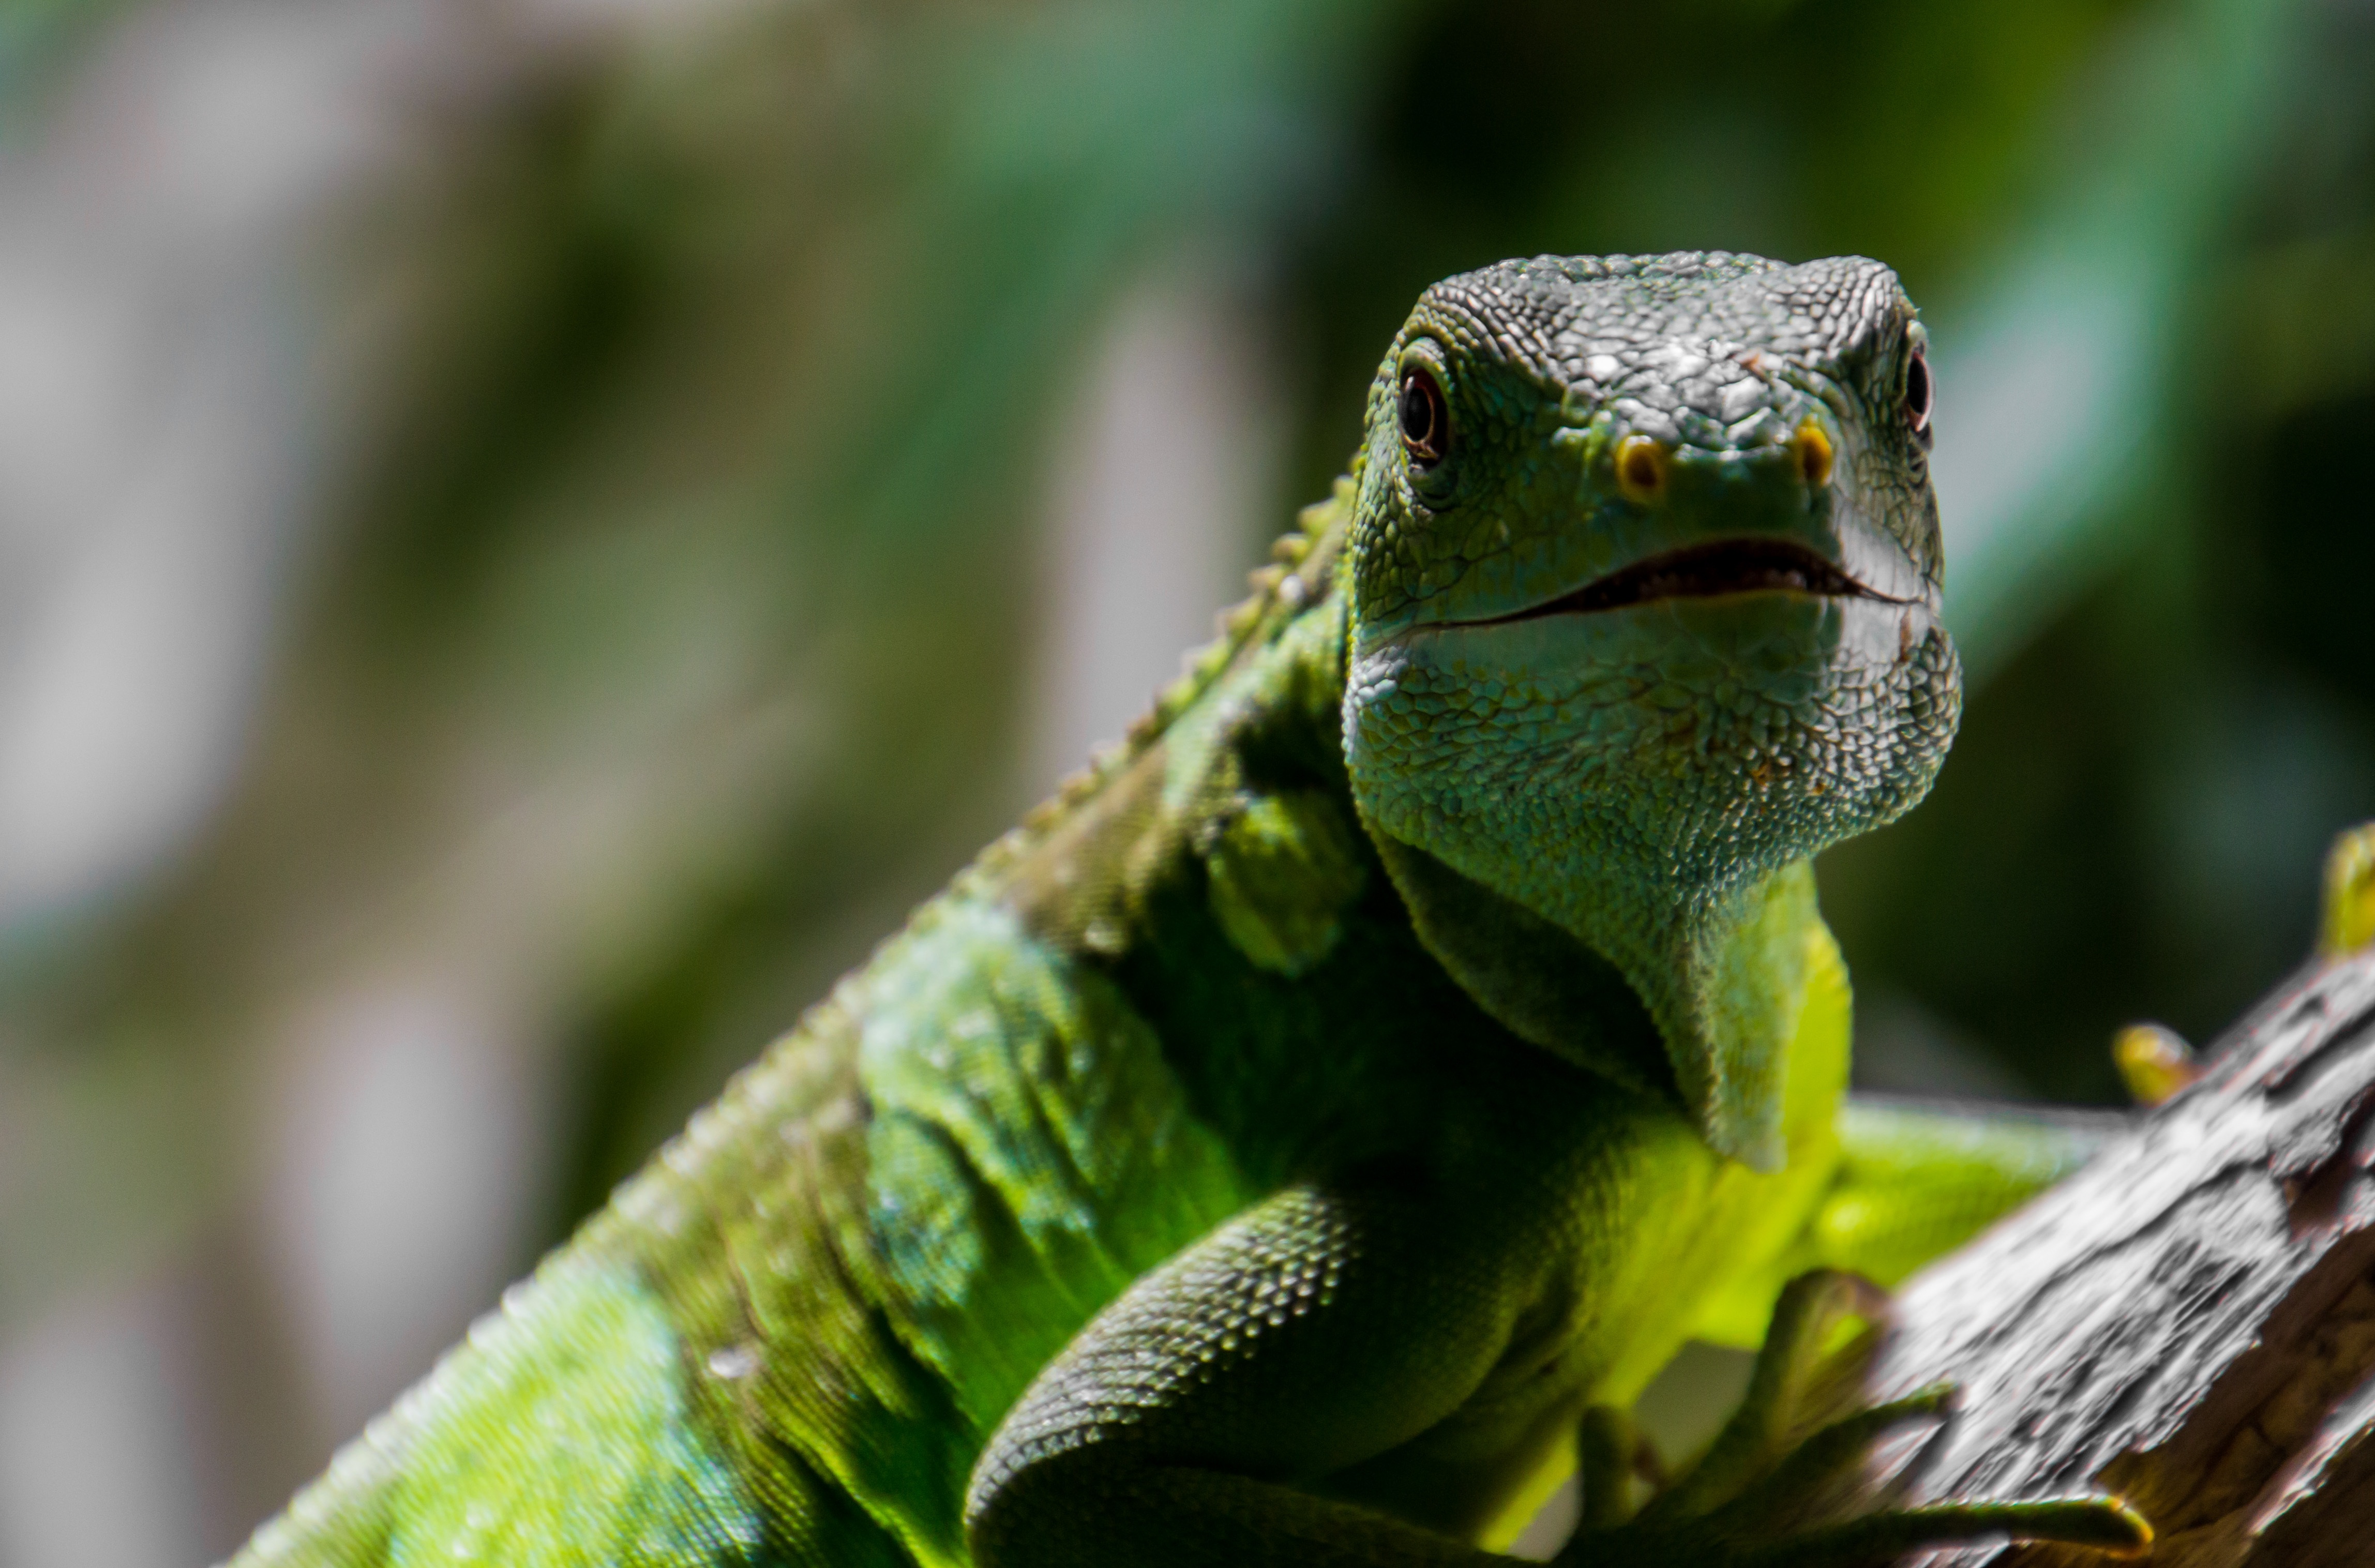 Descarga gratuita de fondo de pantalla para móvil de Animales, Lagarto, Reptiles, Iguana.